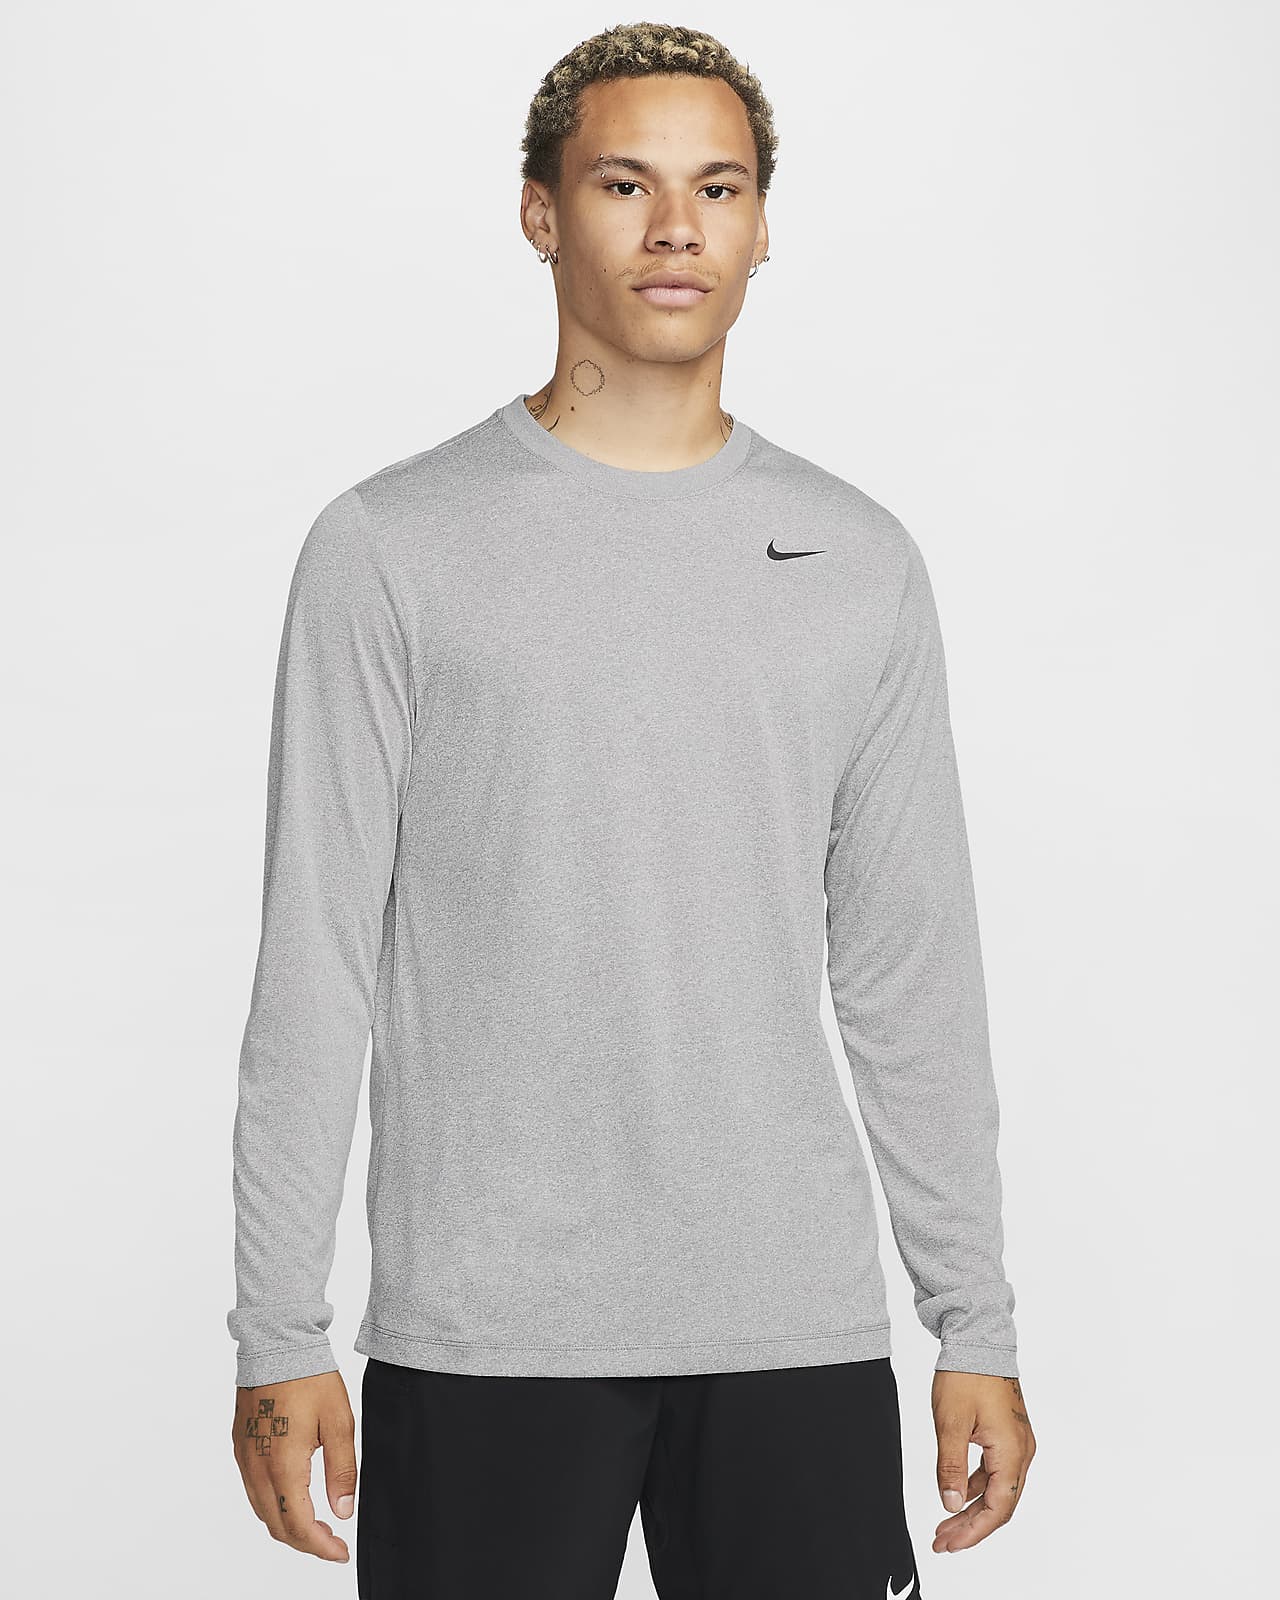 Deseo Contaminado evitar Nike Dri-FIT Legend Men's Long-Sleeve Fitness Top. Nike.com